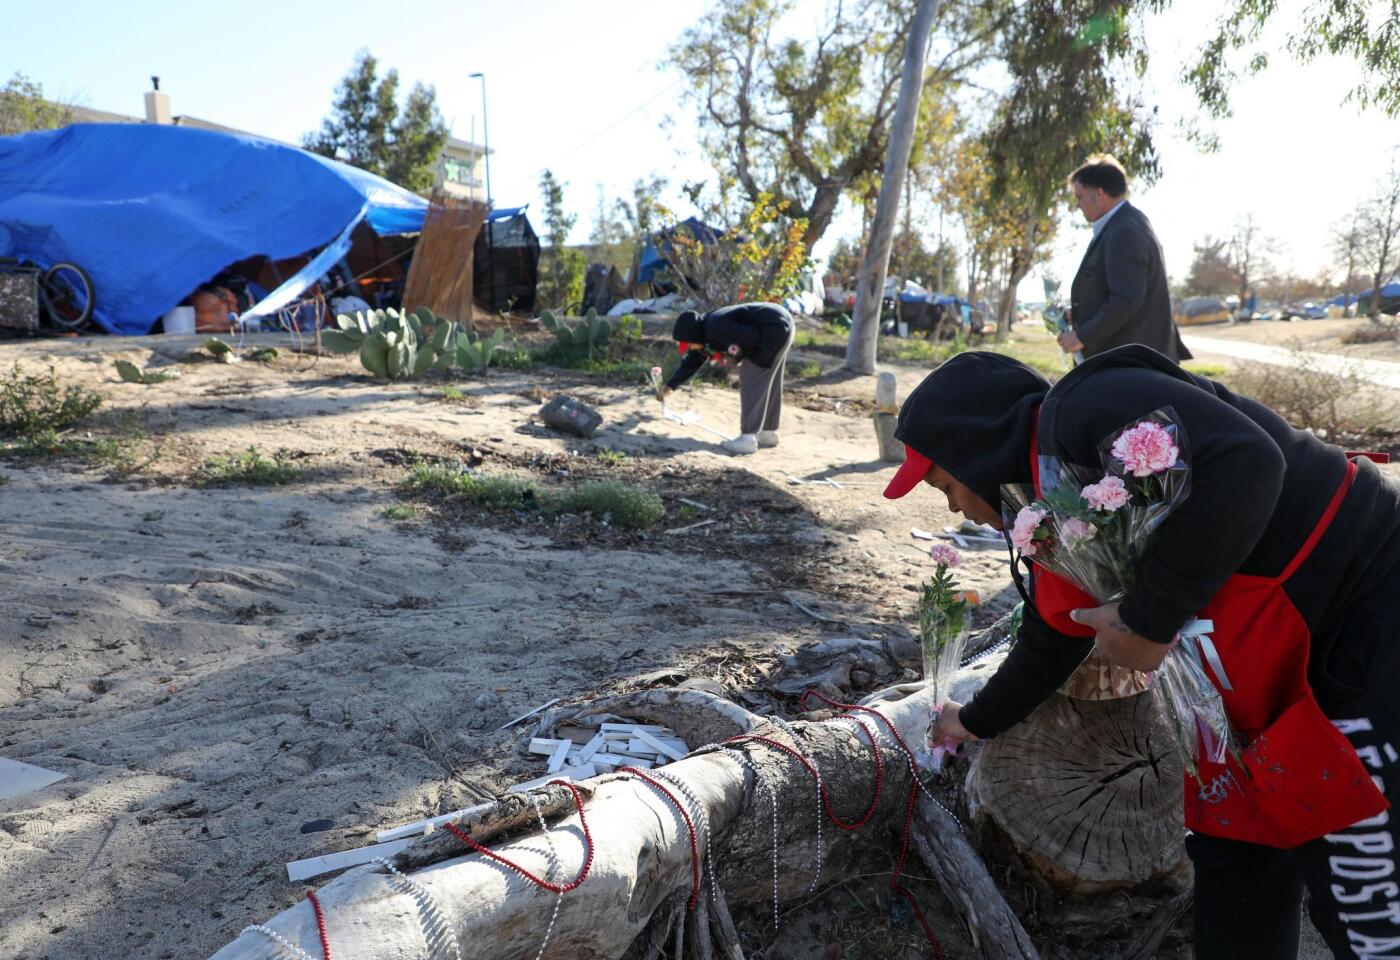 Una mujer deja flores en un campamento junto al lecho del río Santa Ana durante el 'Día de conmemoración a personas sin hogar', en Anaheim, California.